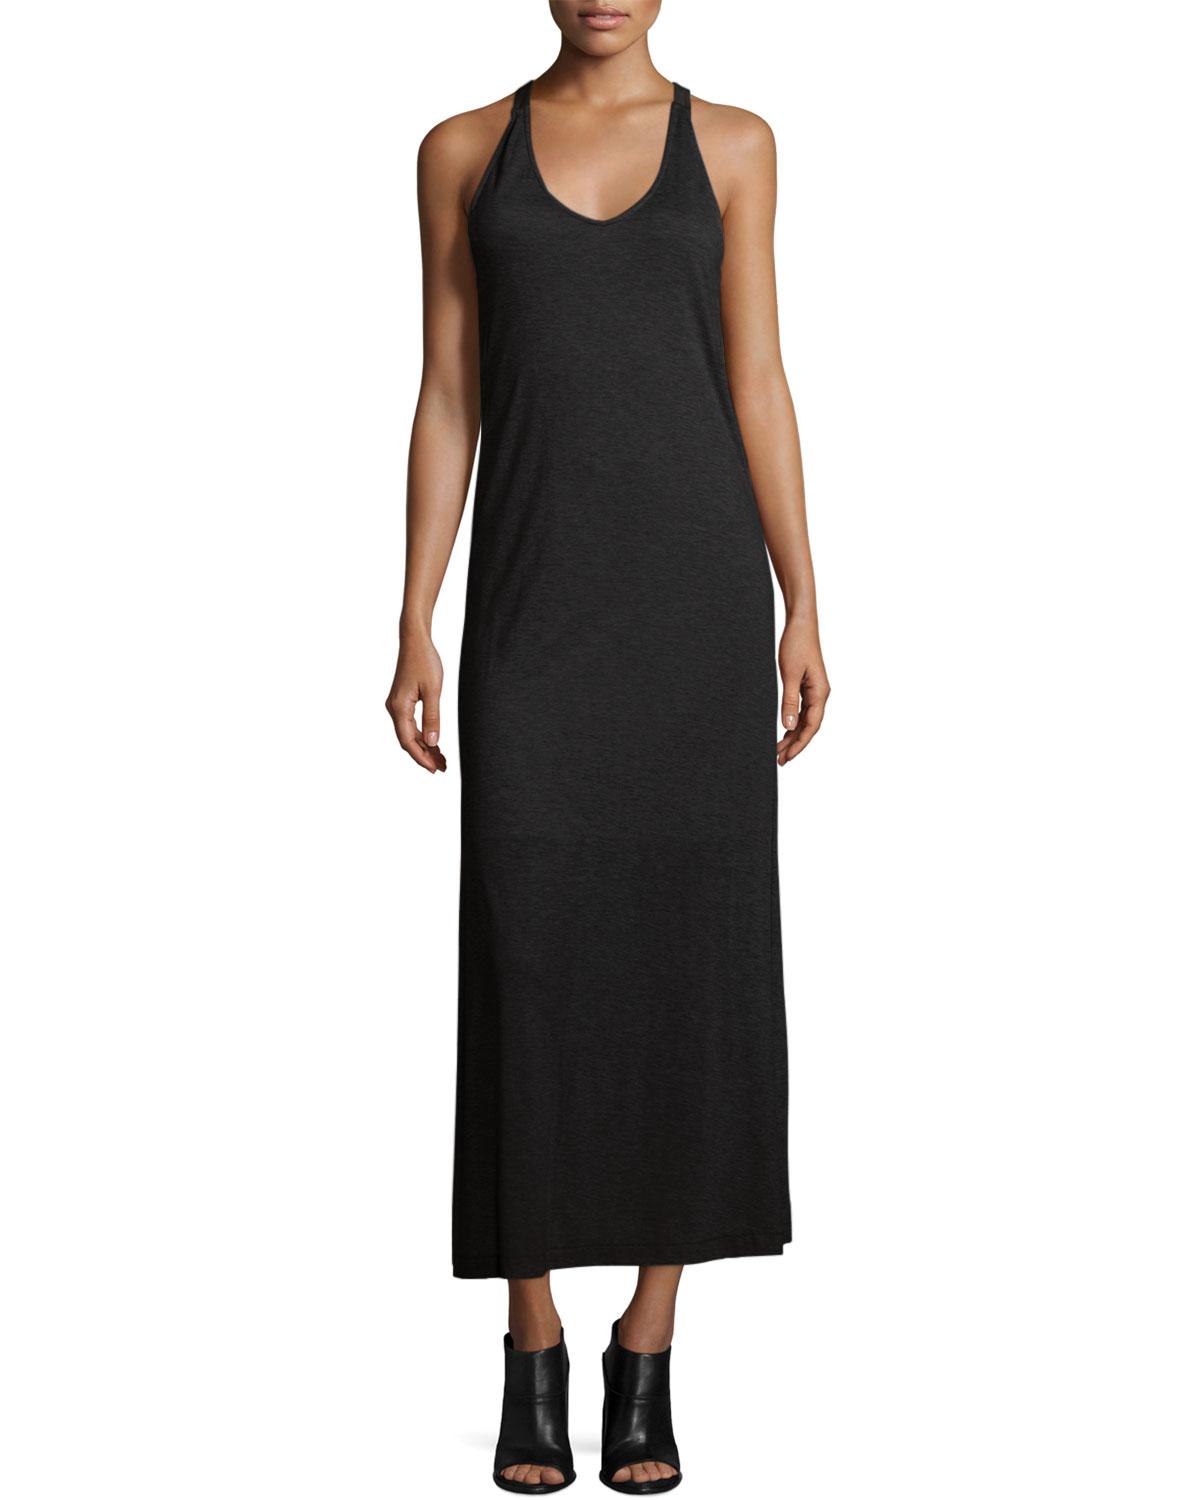 Lyst - Rag & Bone Malibu Sleeveless Knit Maxi Dress in Black